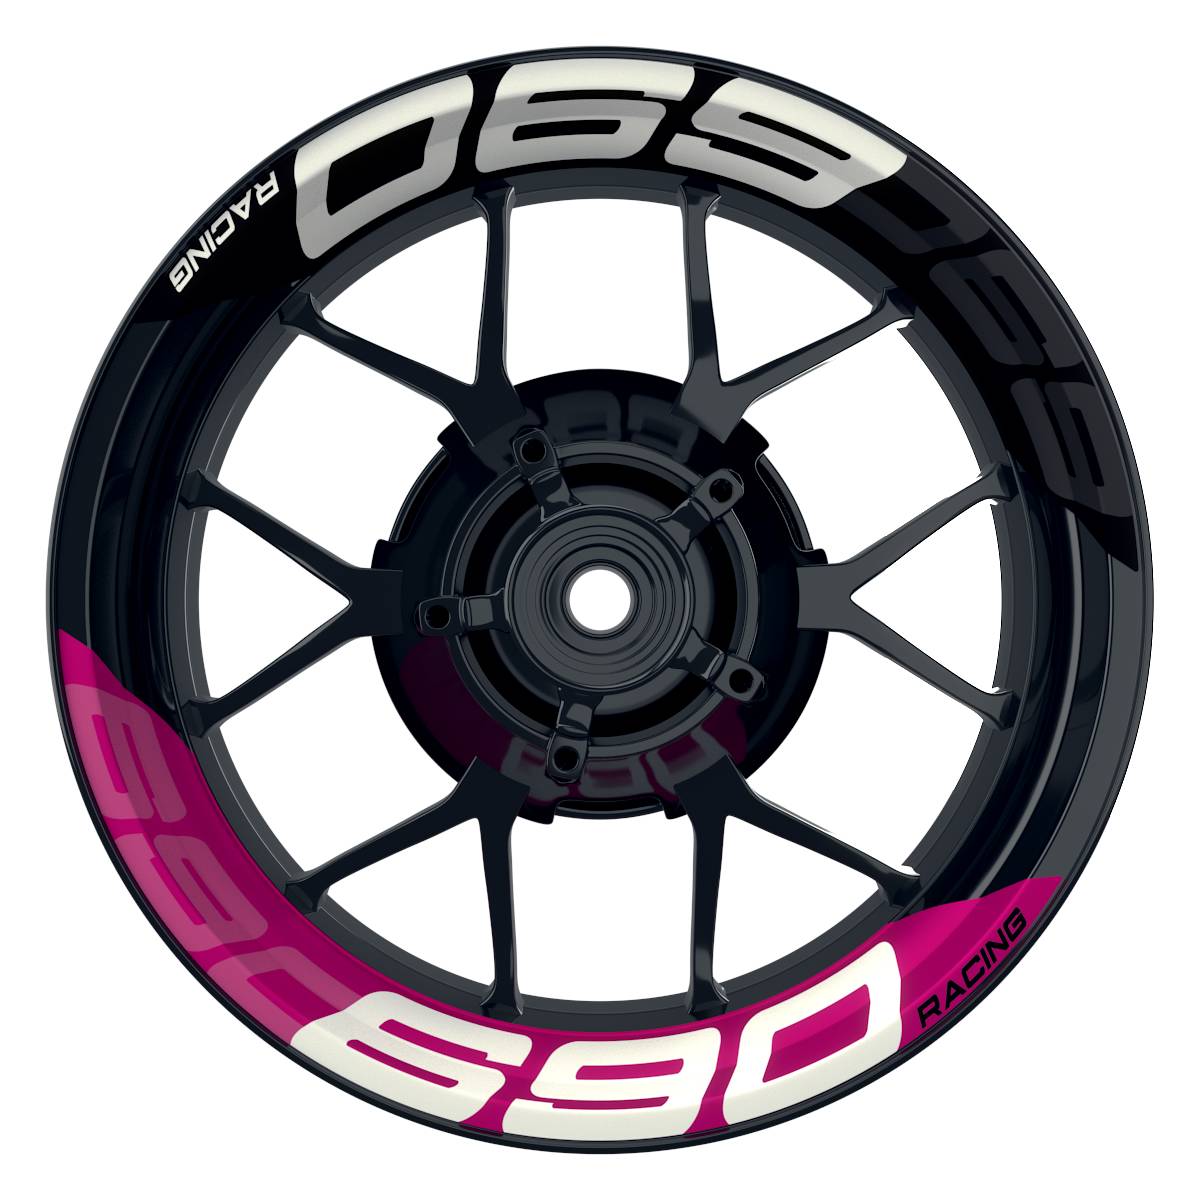 Wheelsticker Felgenaufkleber KTM Racing 690 halb halb V2 schwarz pink Frontansicht